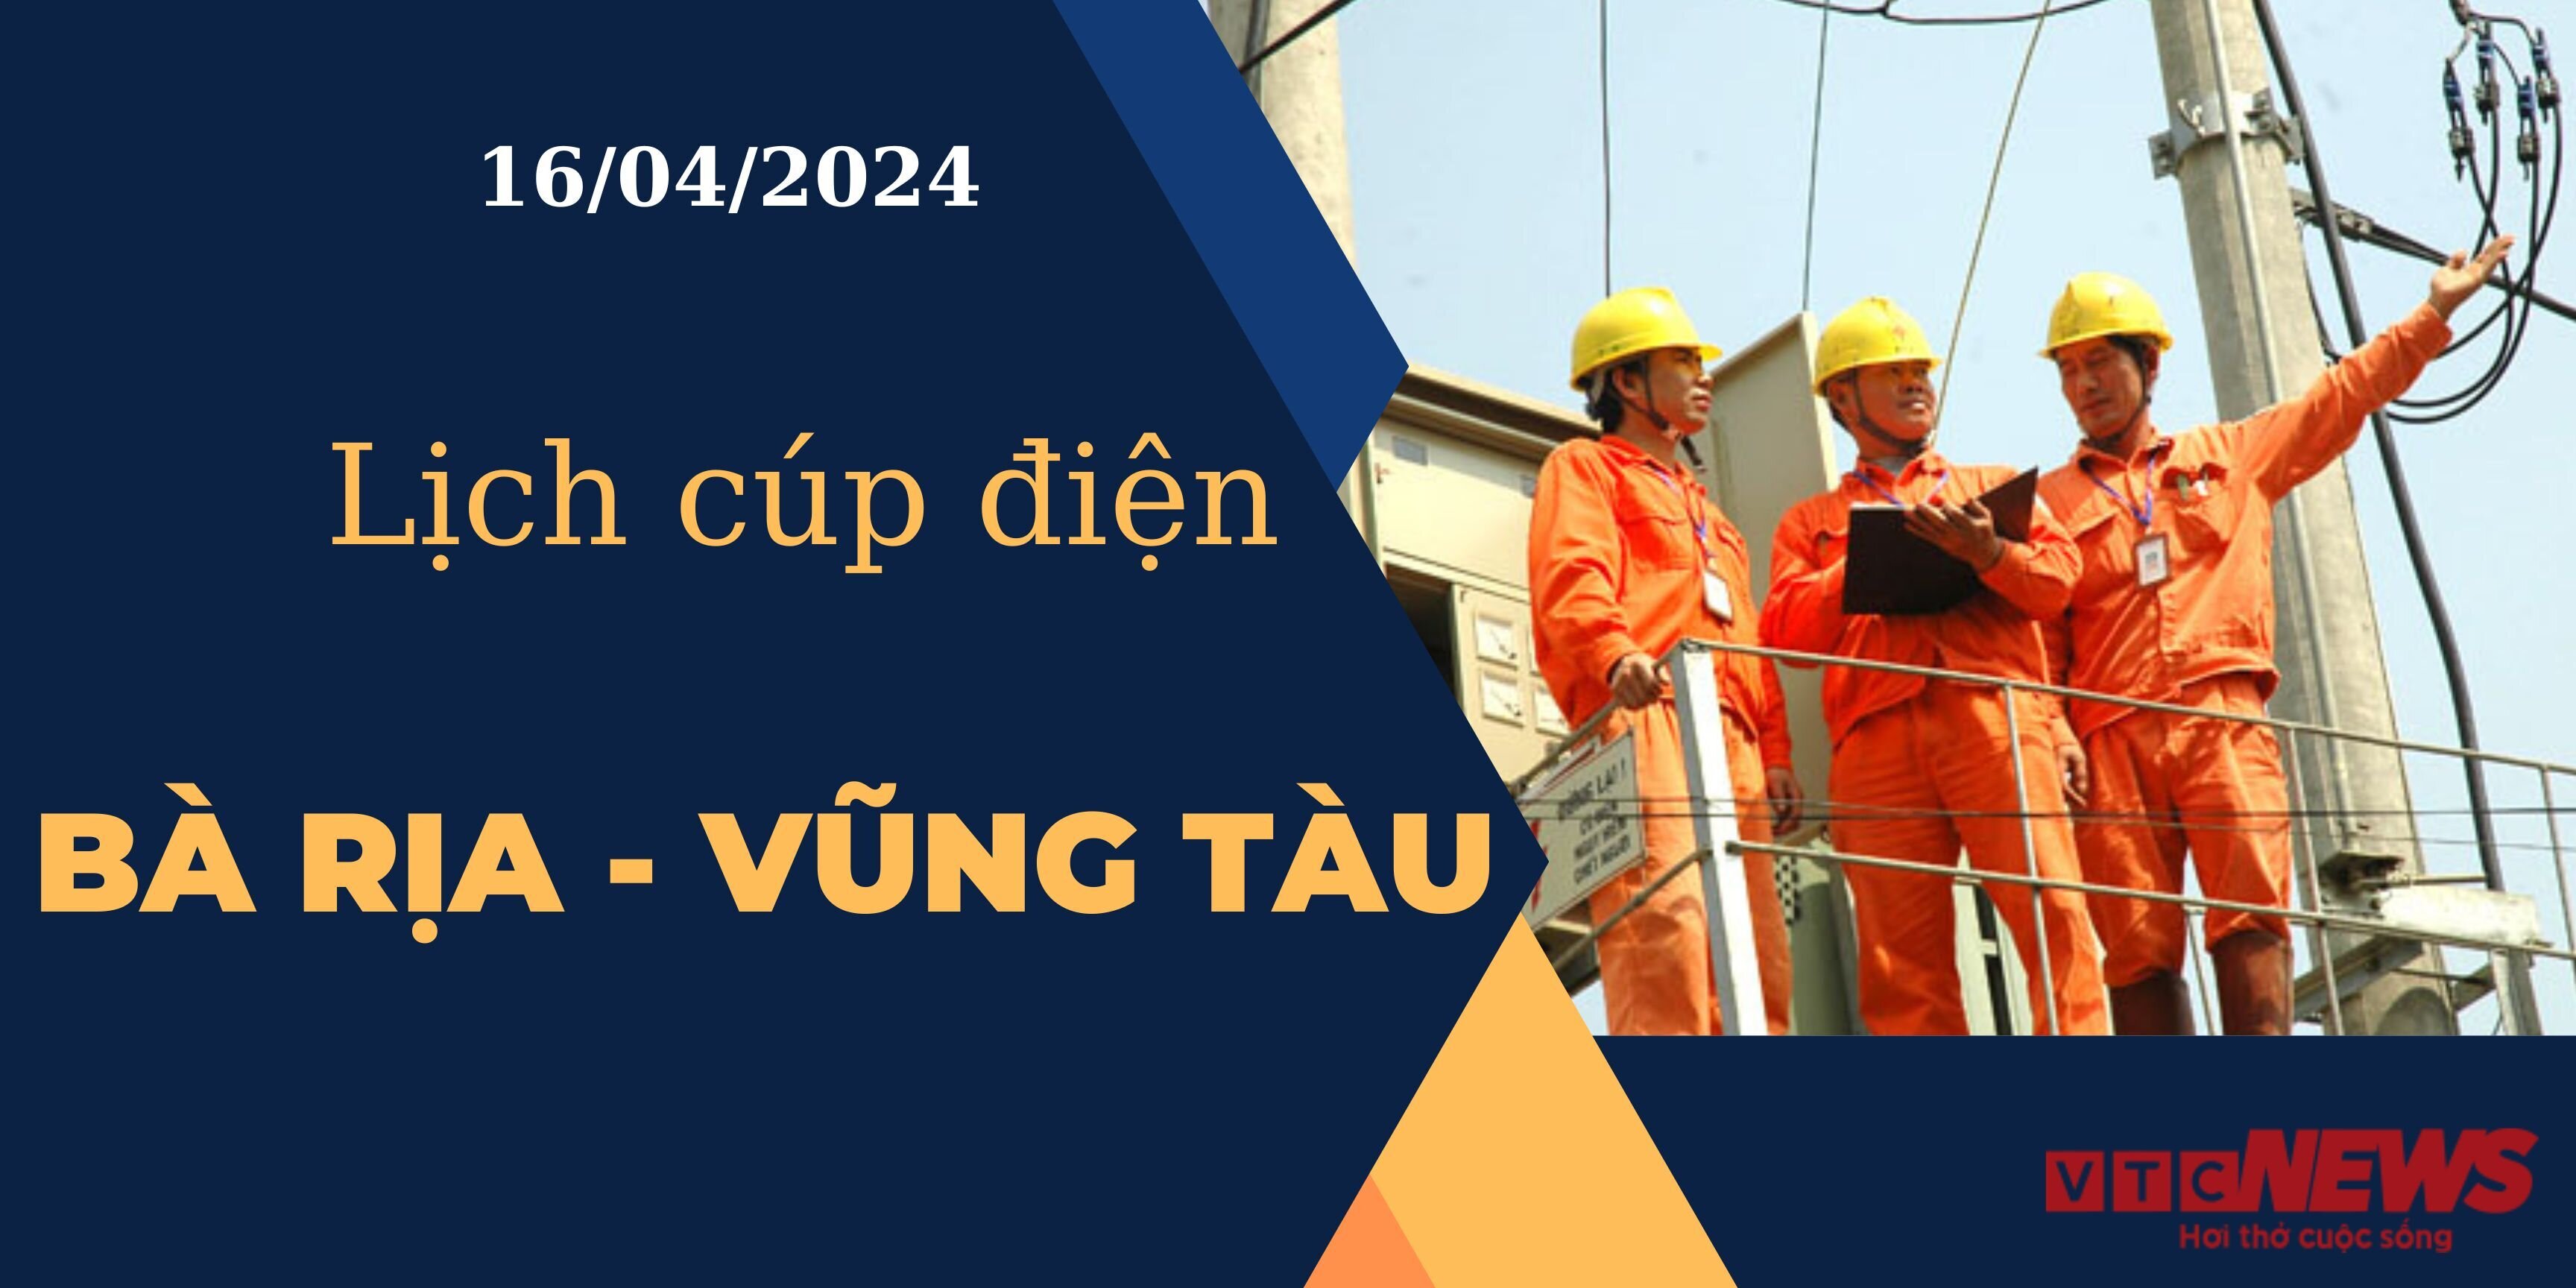 Lịch cúp điện hôm nay ngày 16/04/2024 tại Bà Rịa - Vũng Tàu